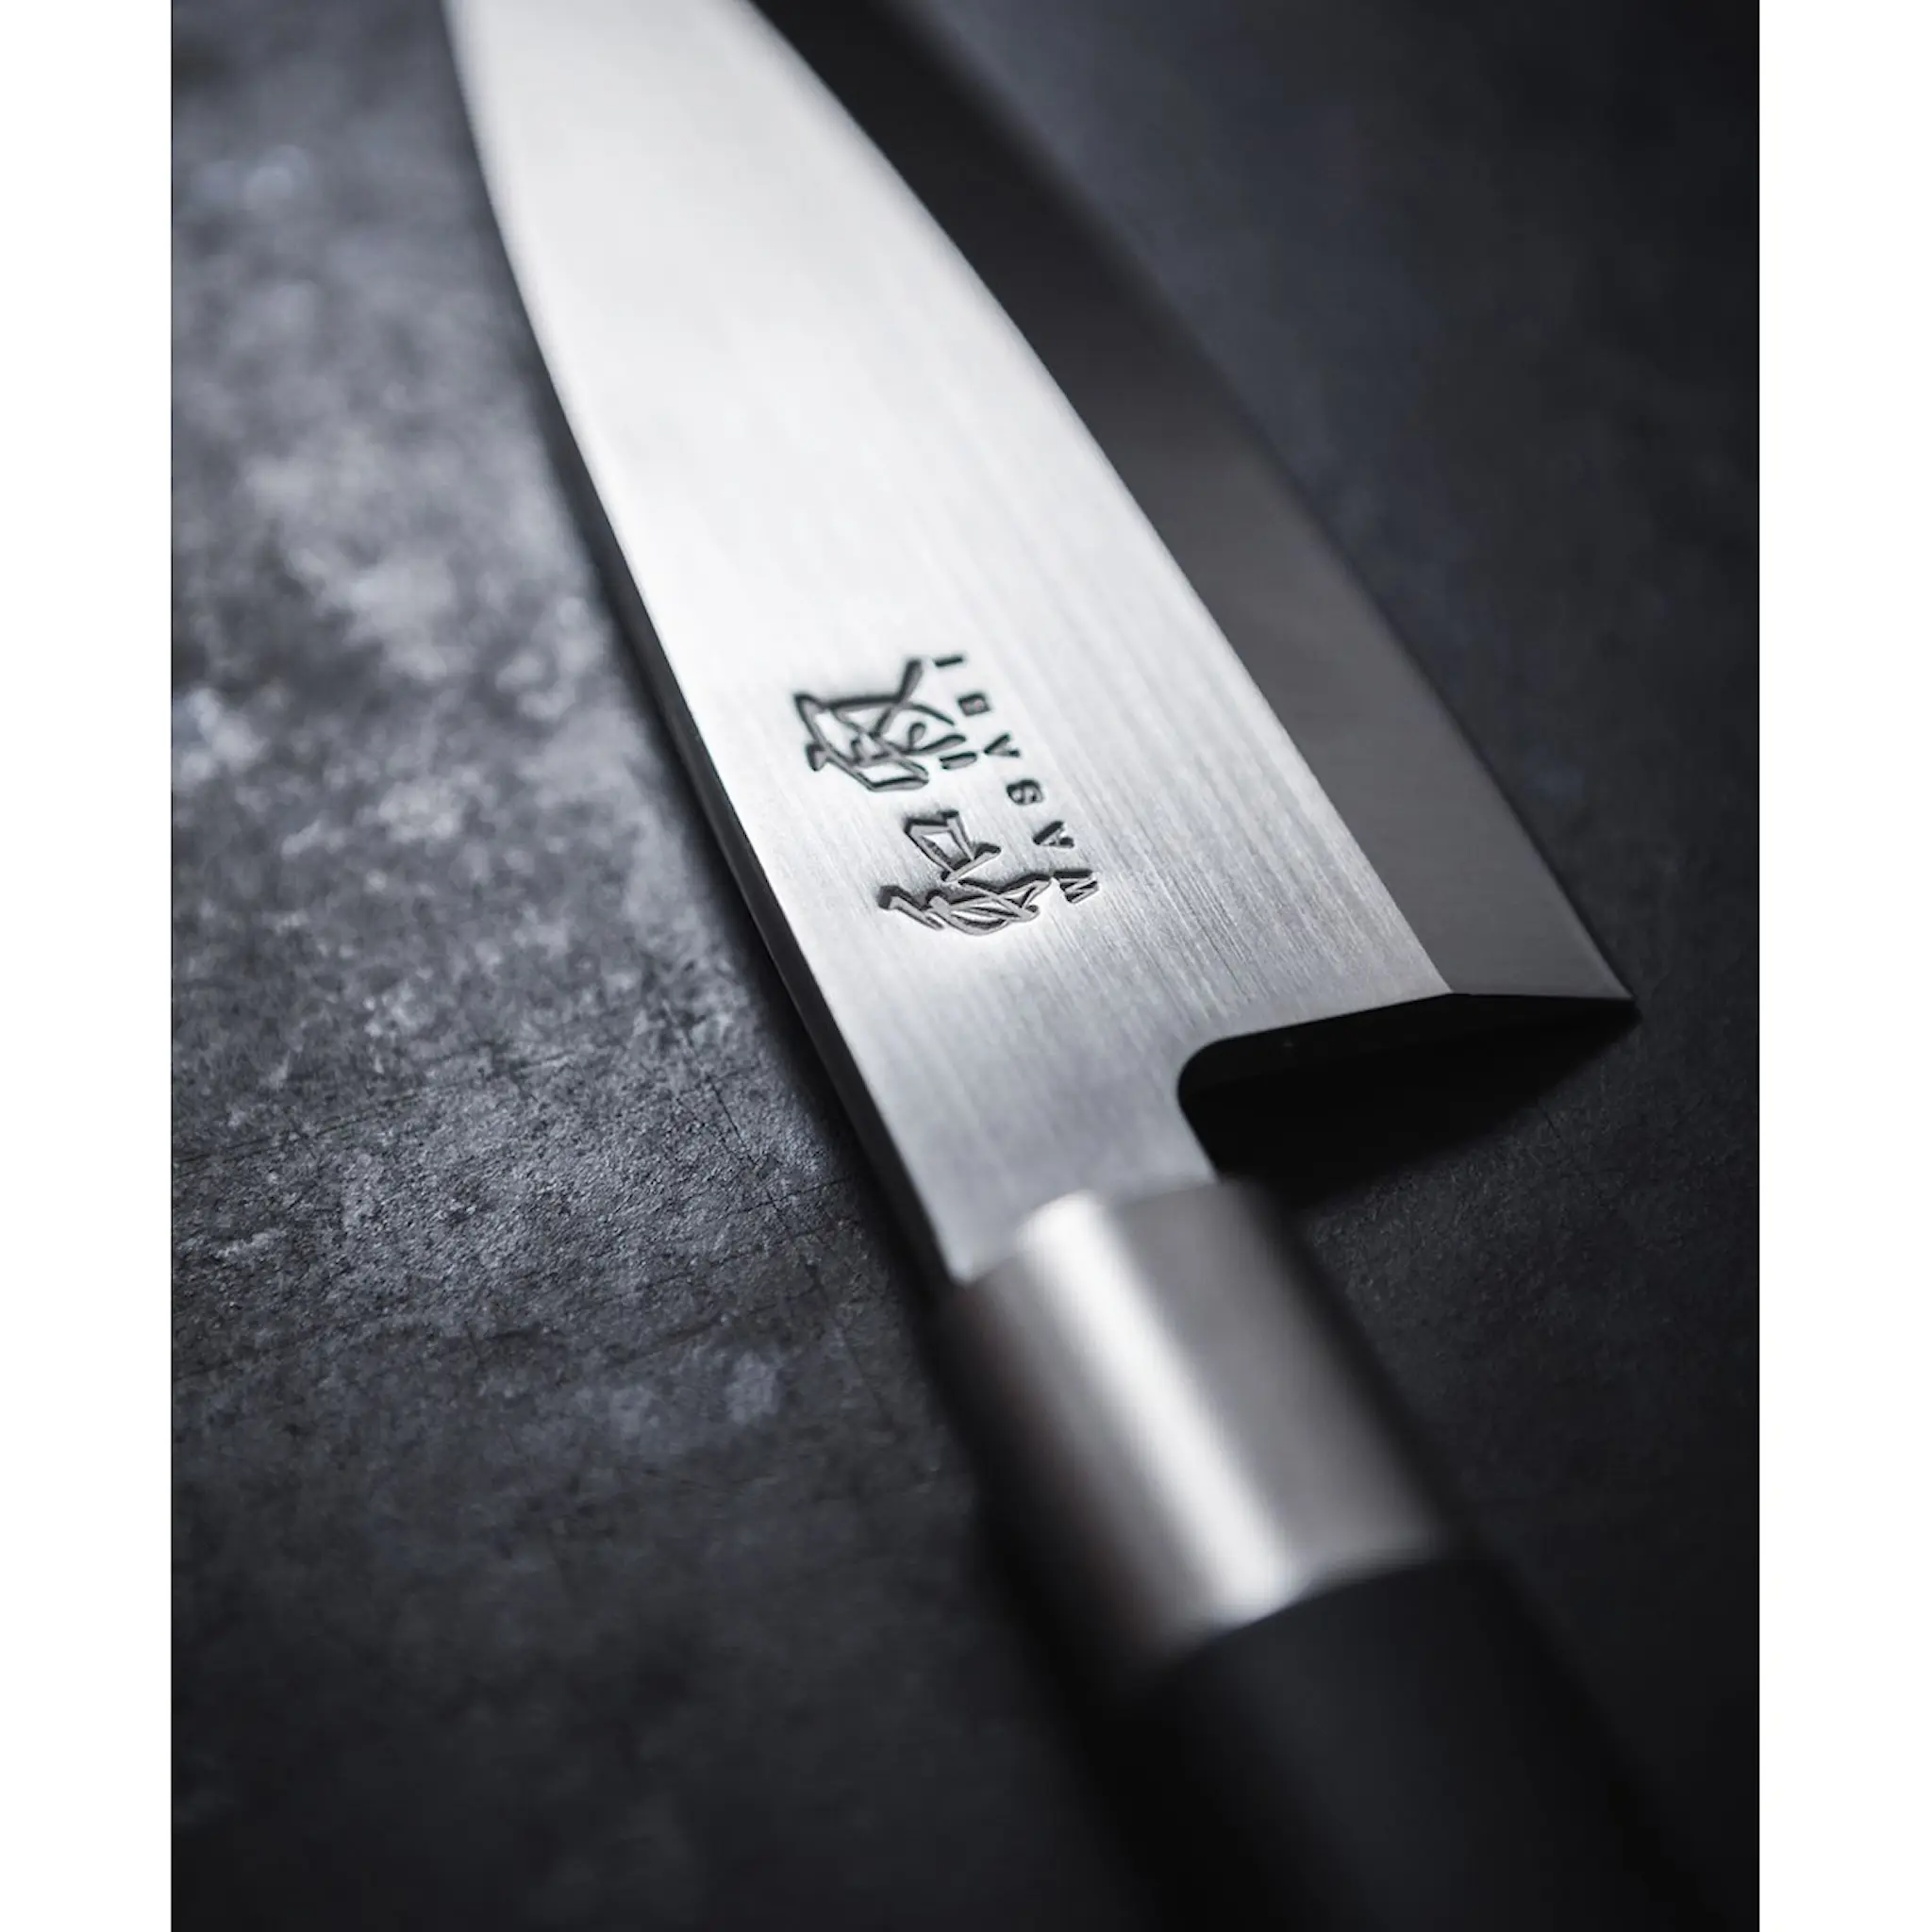 KAI Wasabi Black Kockkniv 23,5 cm